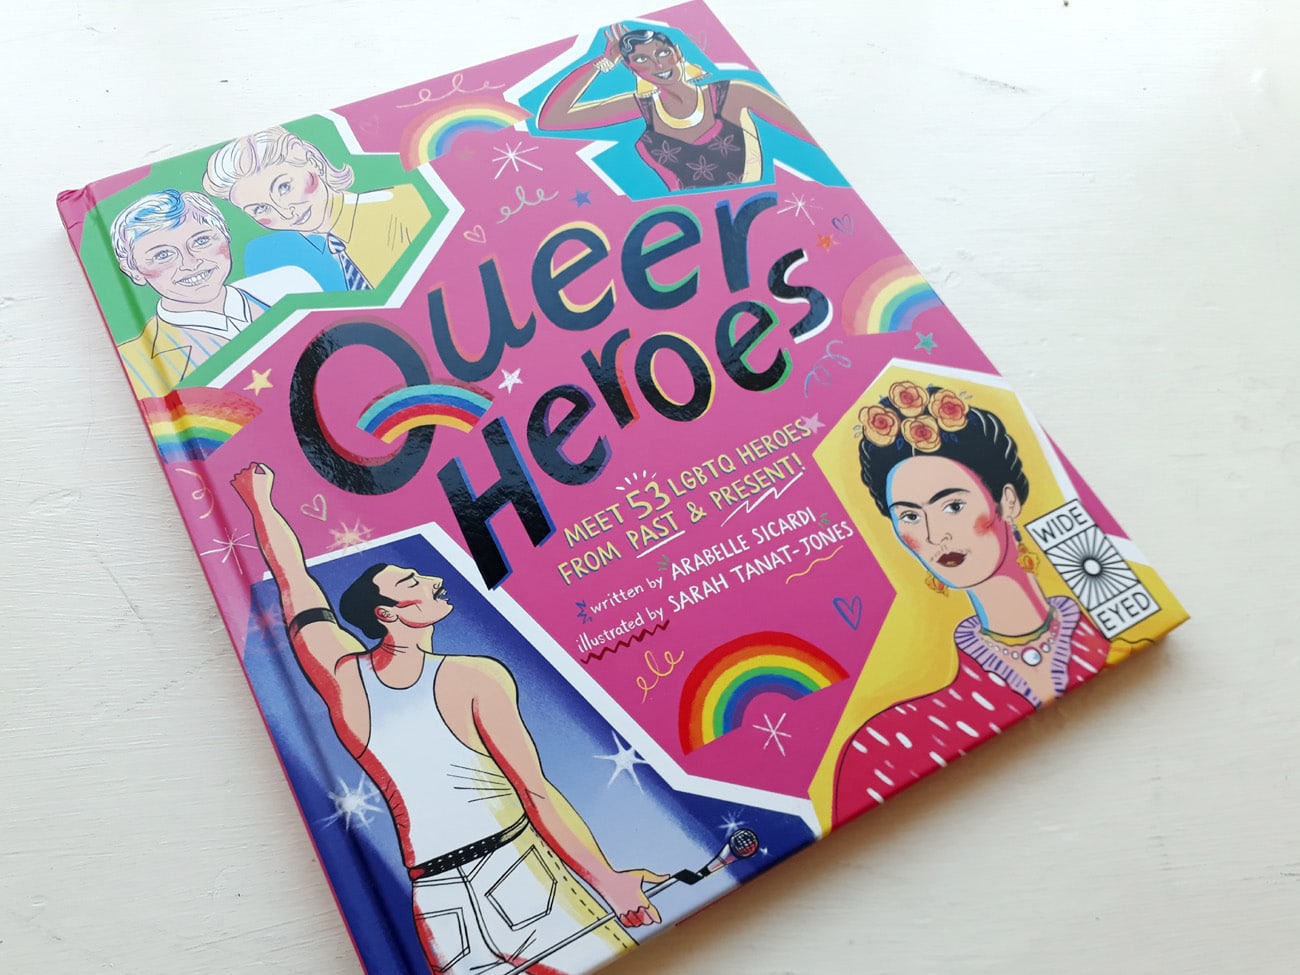 Queer Heroes